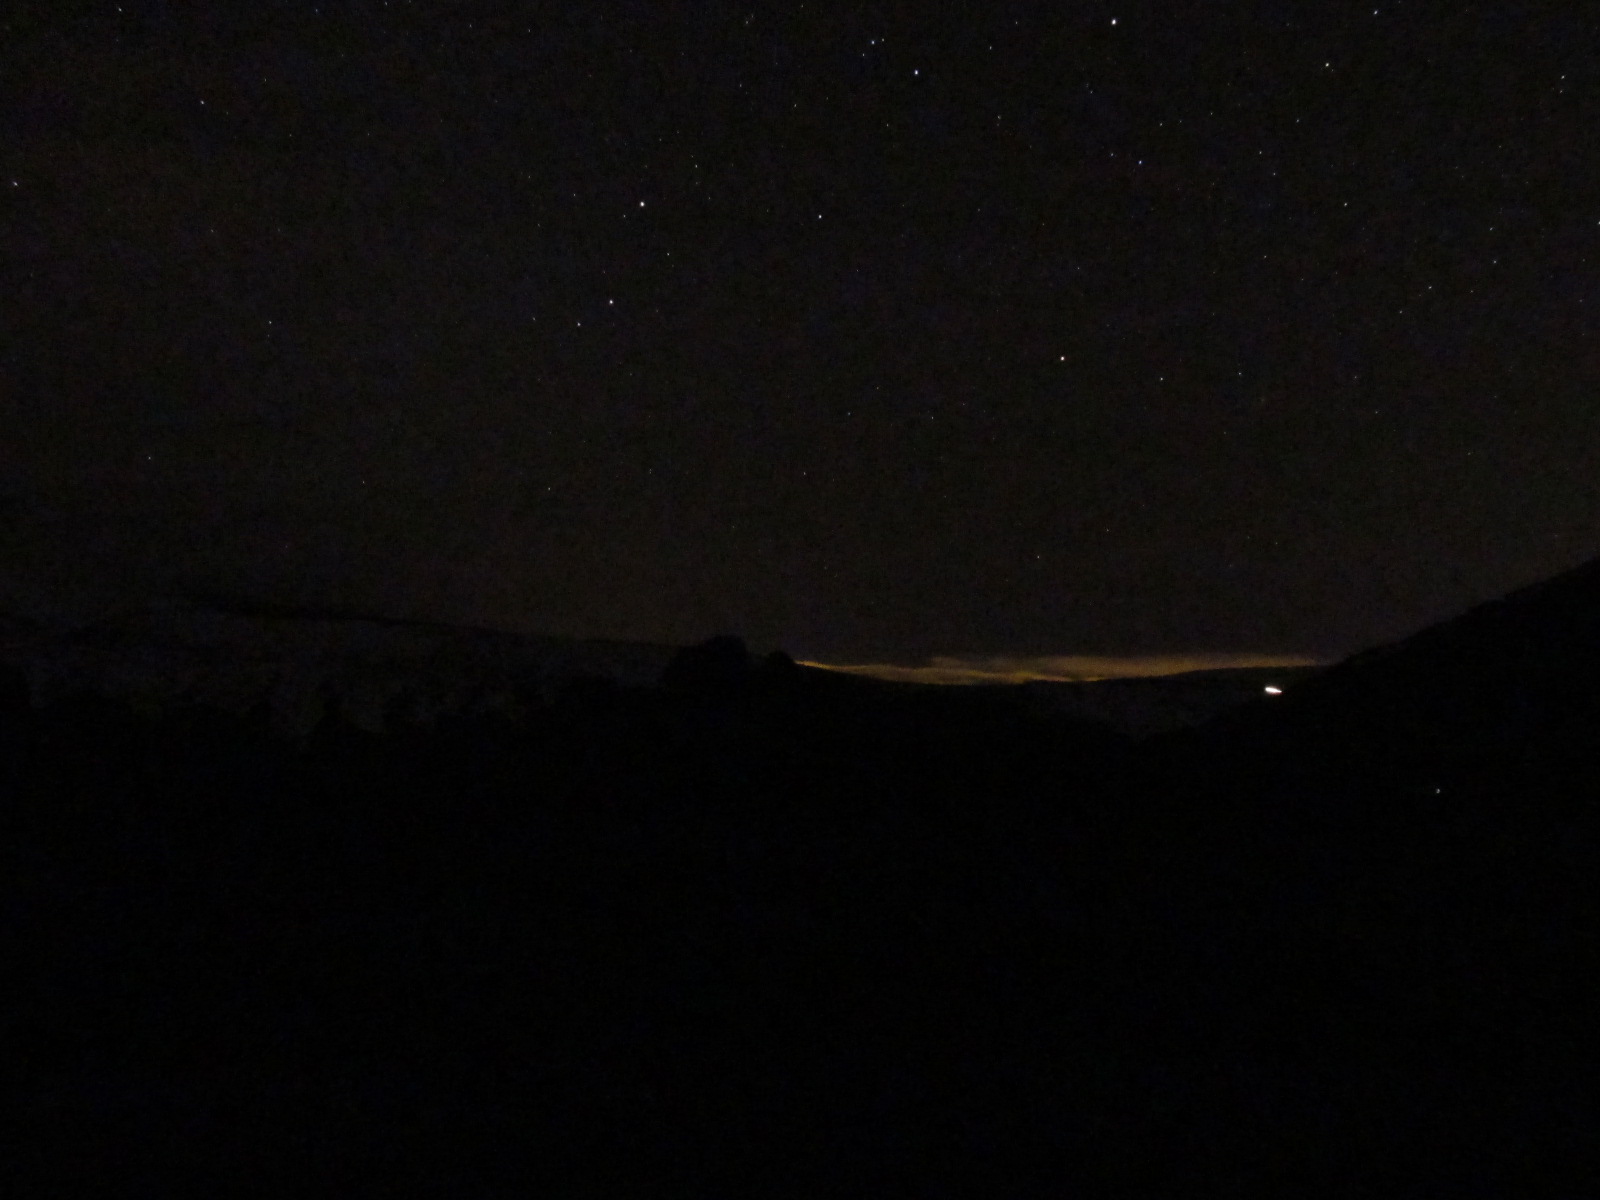 Tenerife light pollution from Puerto de la Cruz